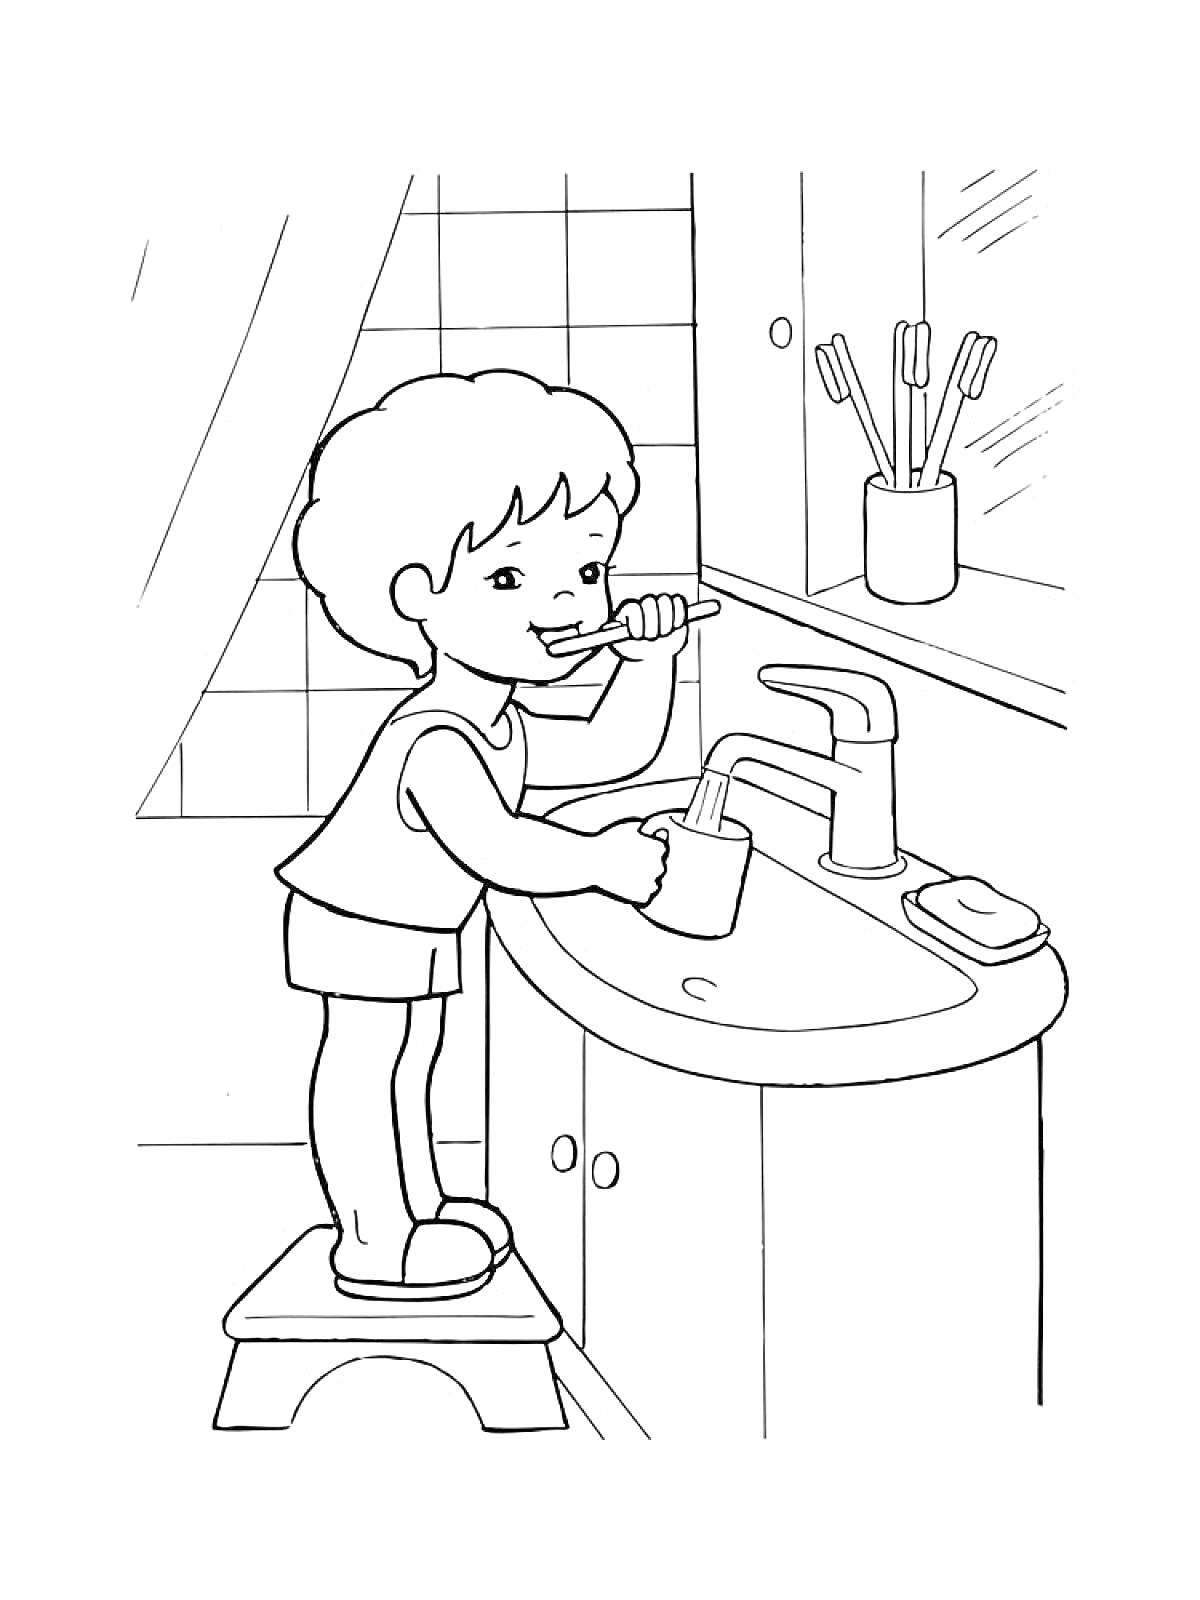 Раскраска Ребёнок чистит зубы в ванной на фоне раковины с туалетными принадлежностями (стаканчик для зубных щеток, мыло, зеркало)